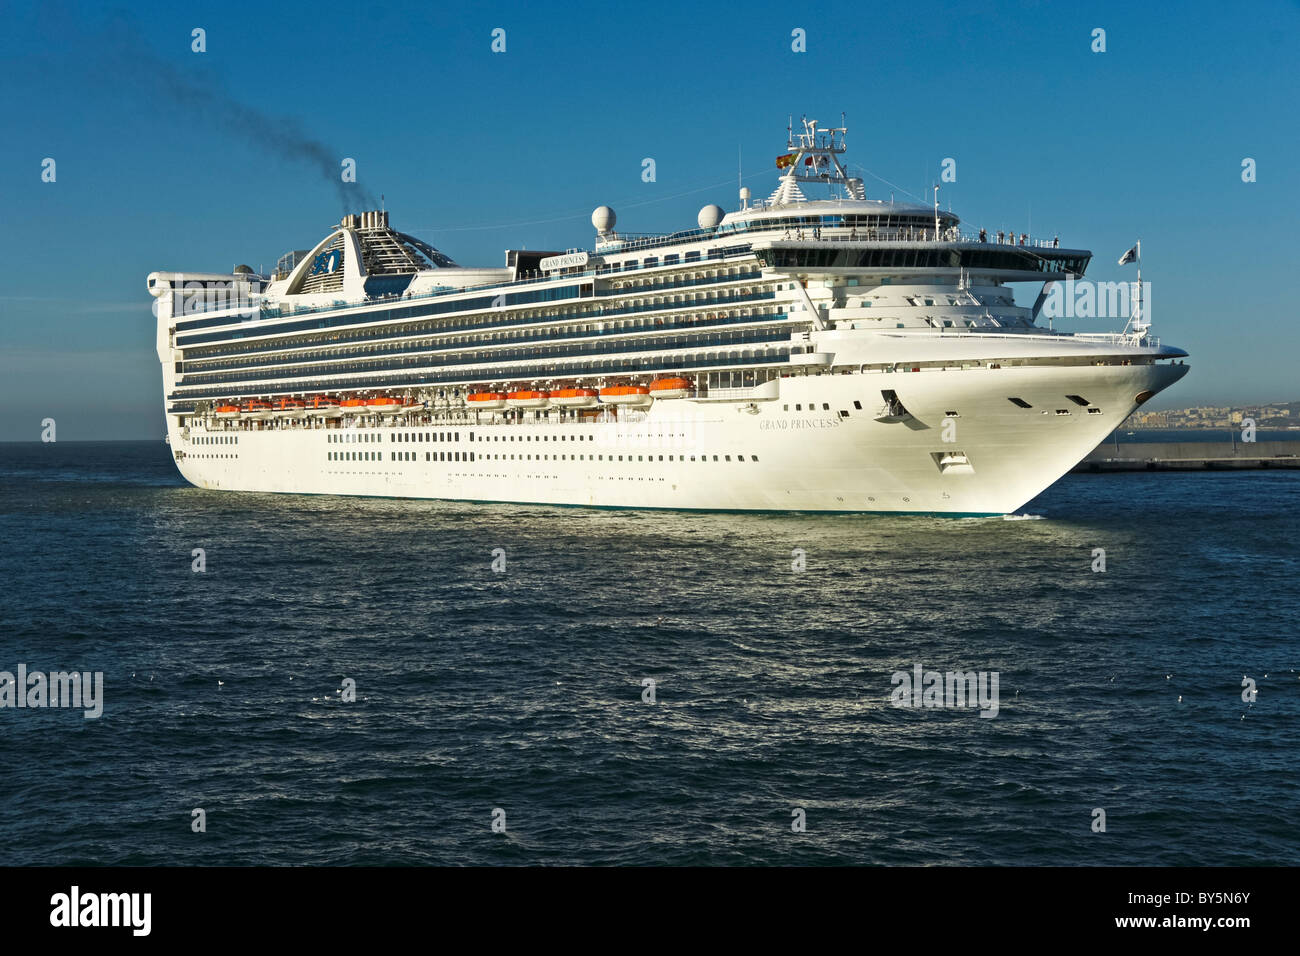 Princess Cruises cruceros Grand Class Grand Princess llegar a Málaga en España Foto de stock